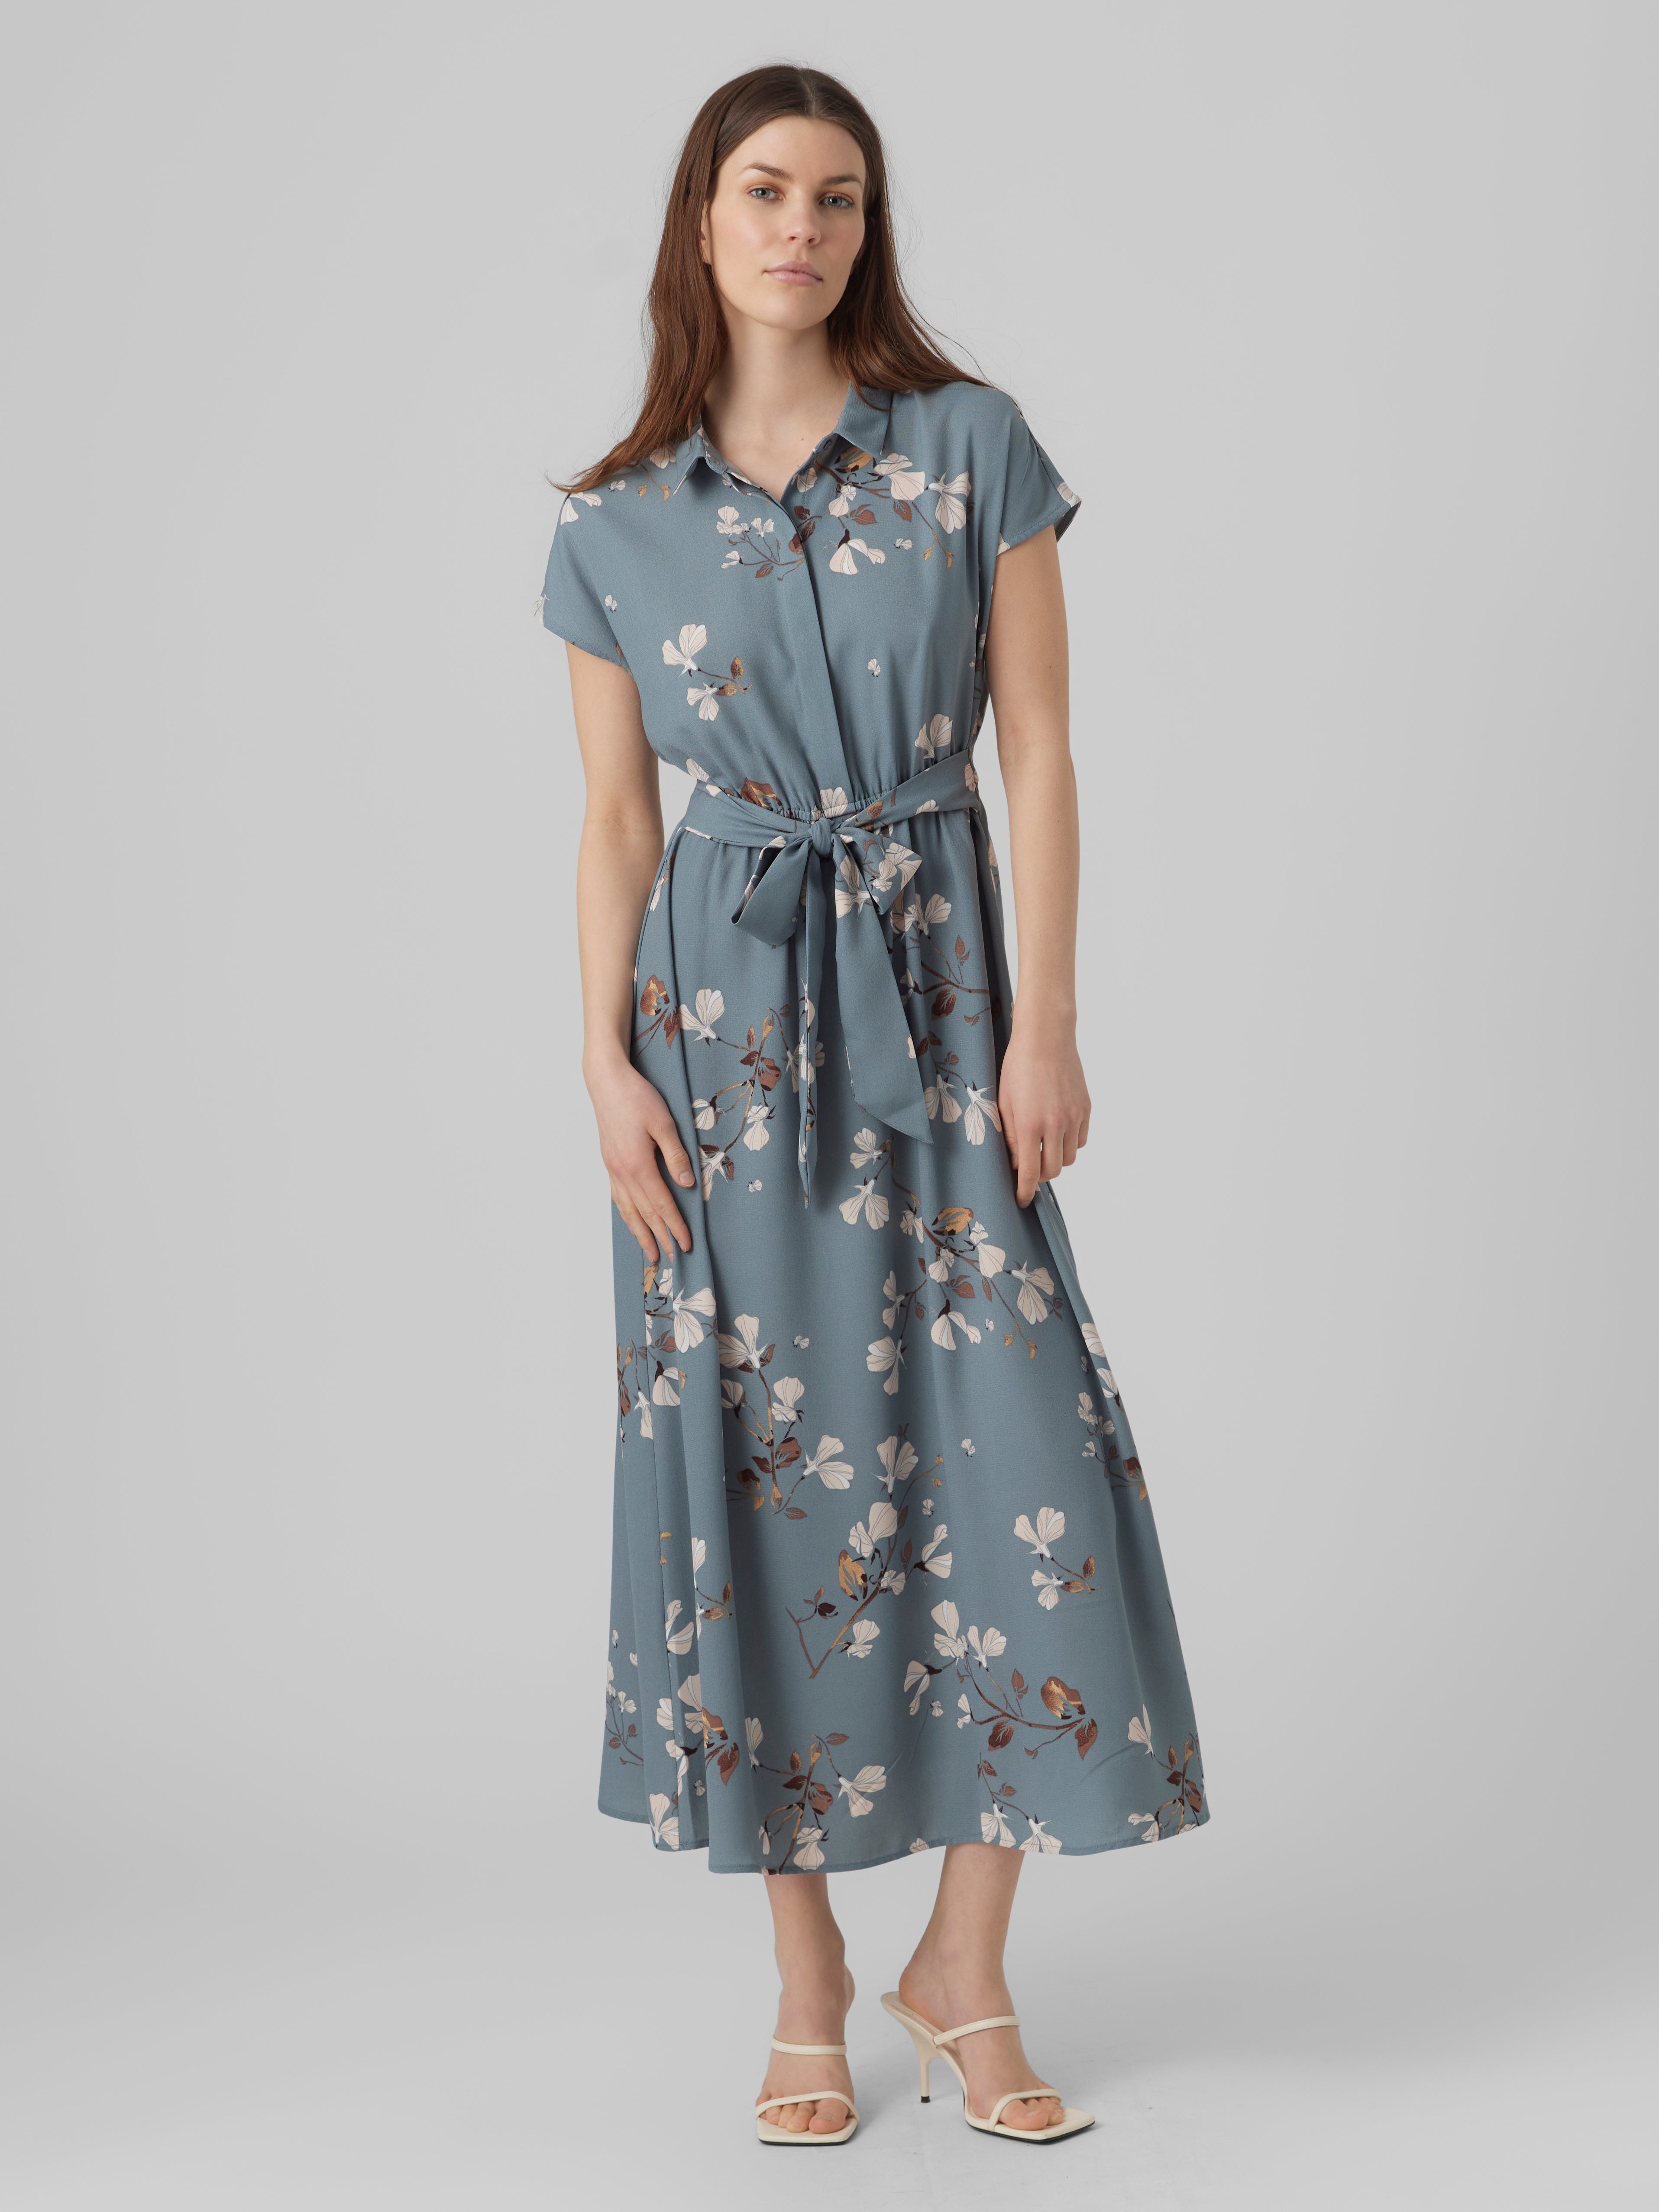 Floral Dresses: Maxi, Midi & More | VERO MODA